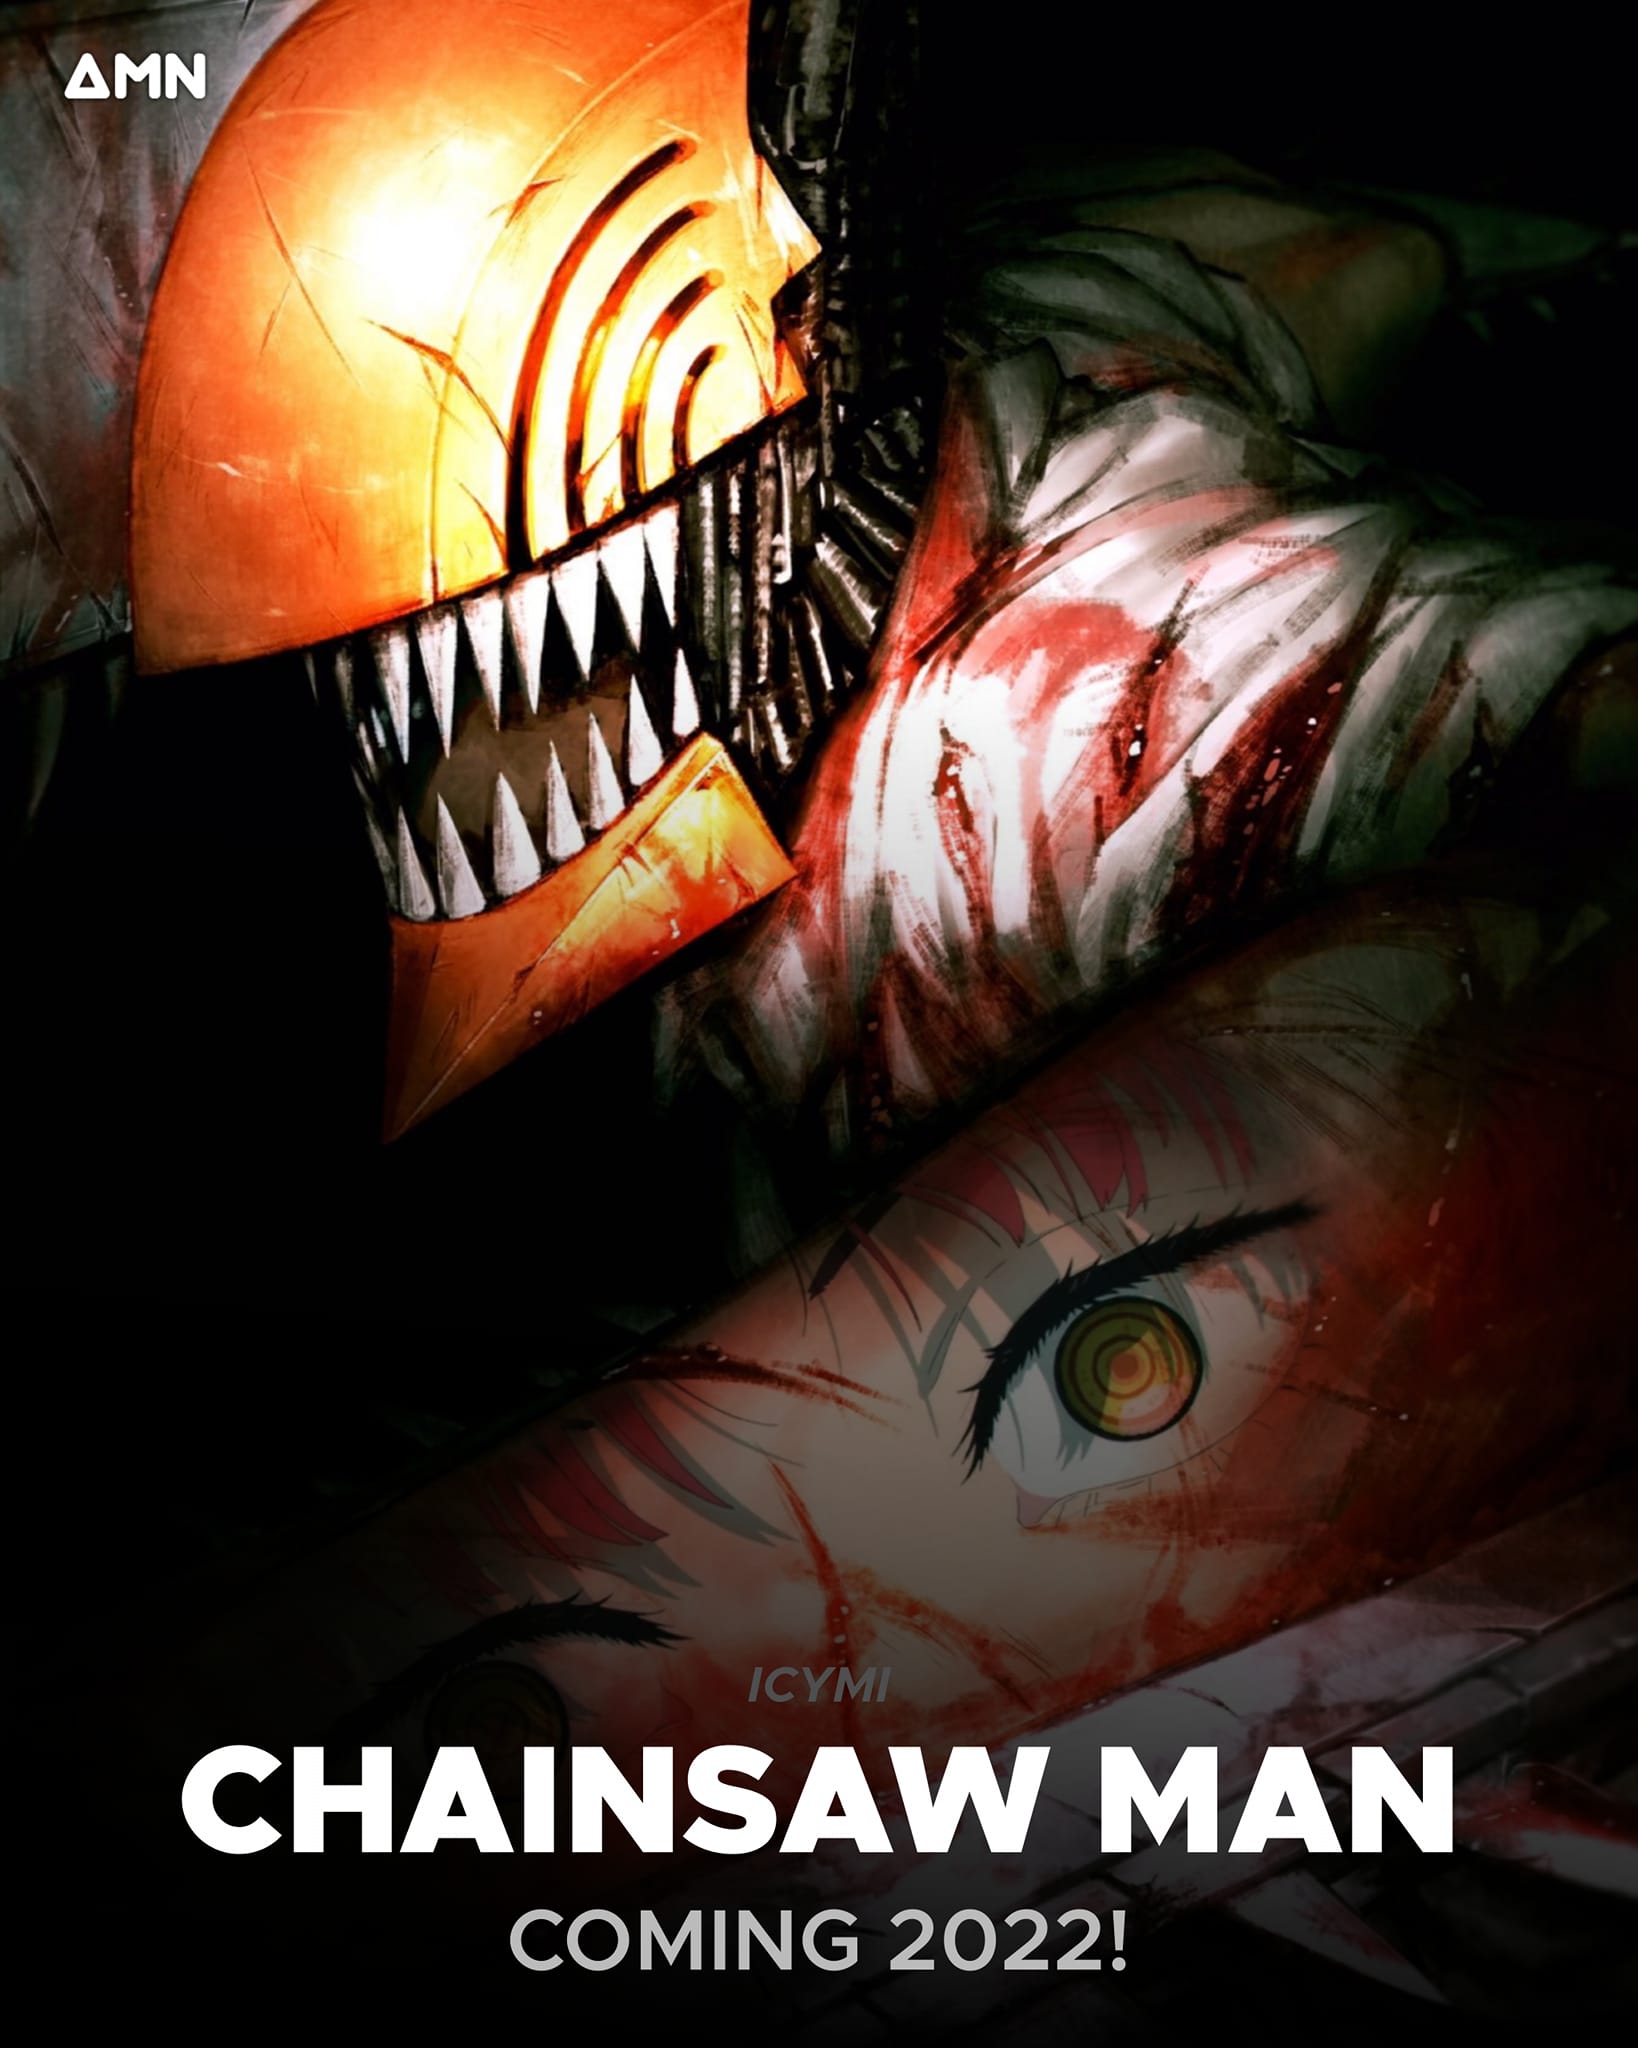 Anime Chainsaw Man - một bộ phim hoạt hình được yêu thích bởi những tràng cười và những cảnh quay đẹp mắt. Hãy xem hình để khám phá thế giới của Chainsaw Man và tìm hiểu vì sao anh ta lại trở thành một huyền thoại.